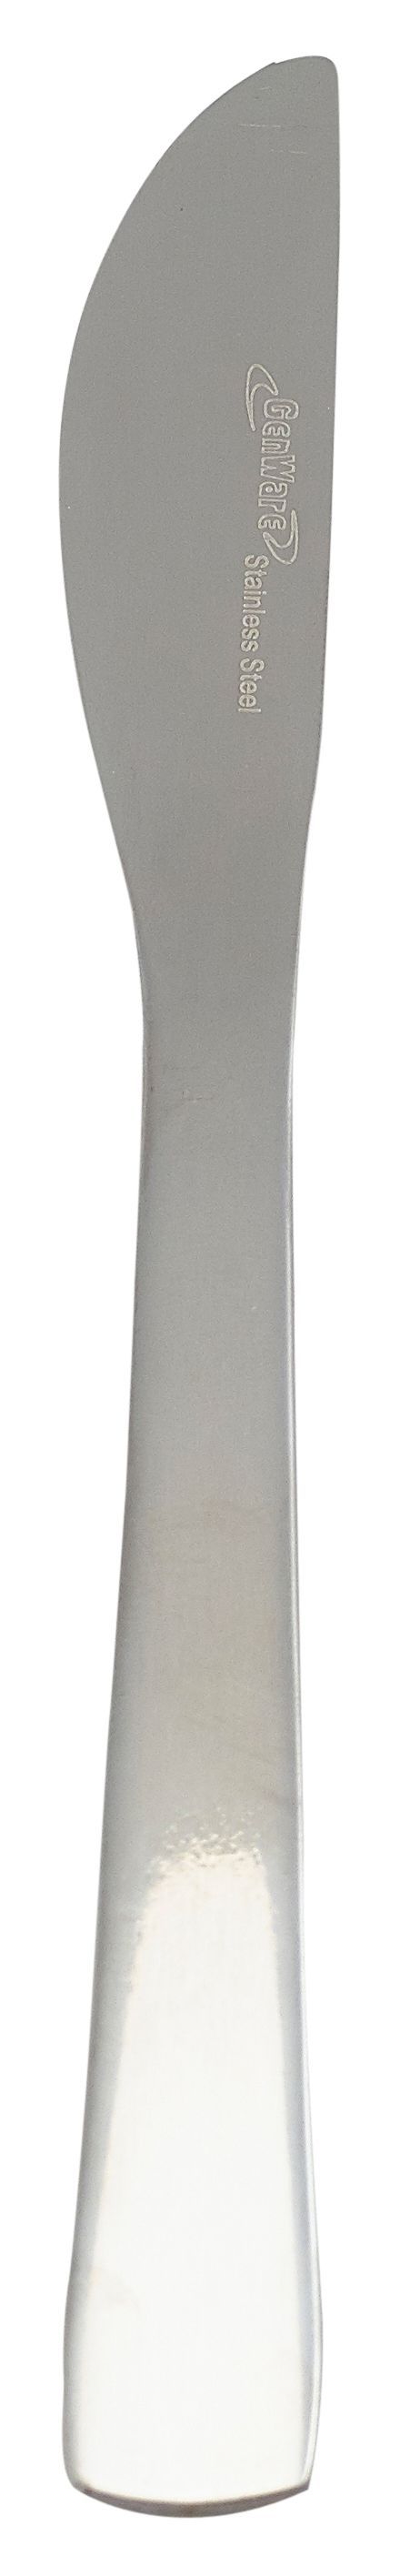 Millenium Small Knife (Dozen) 162mm Long